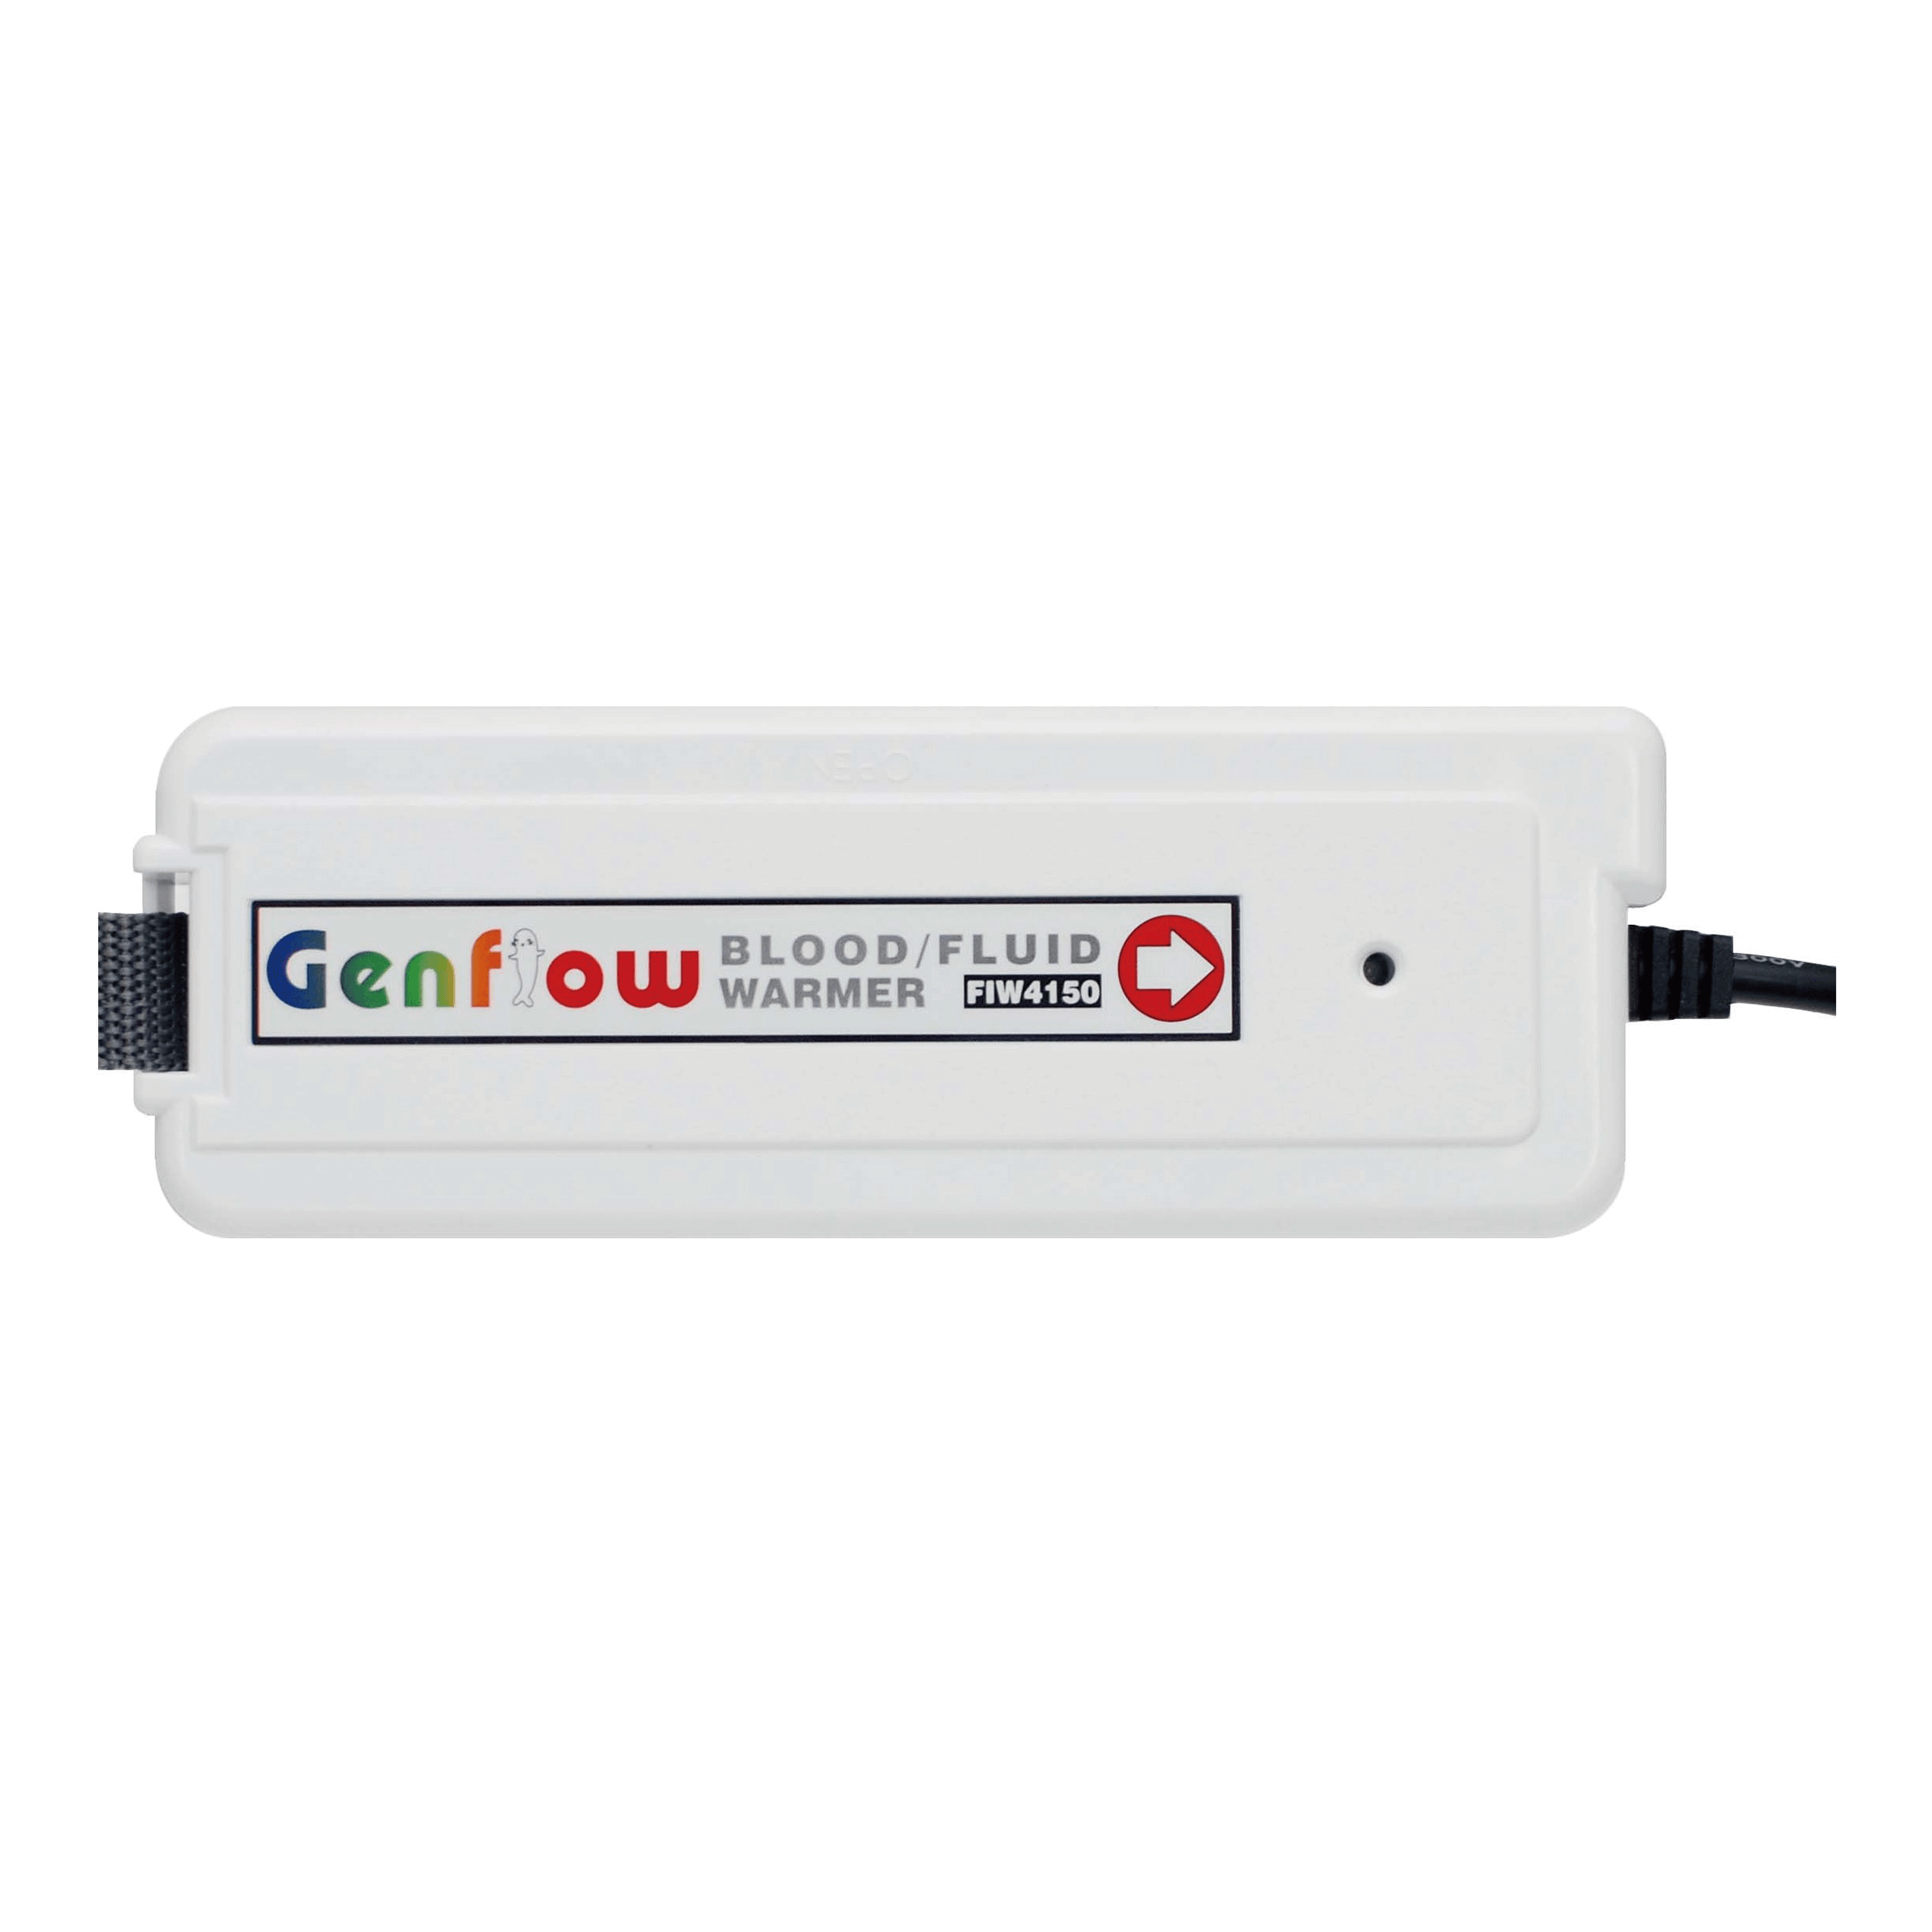 genflow-blood-Fluid-warmer